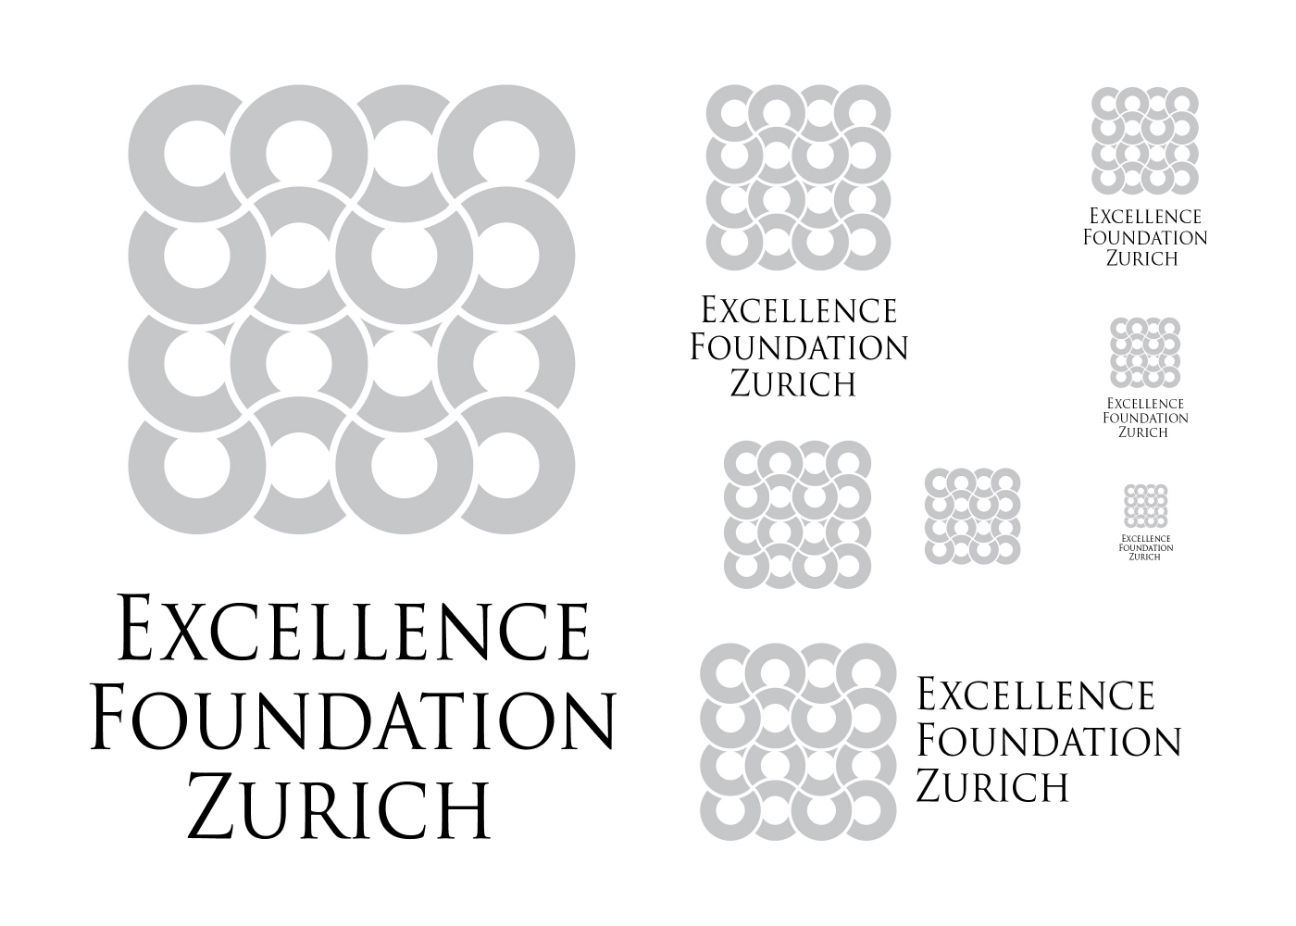 Excellence Foundation Zurich